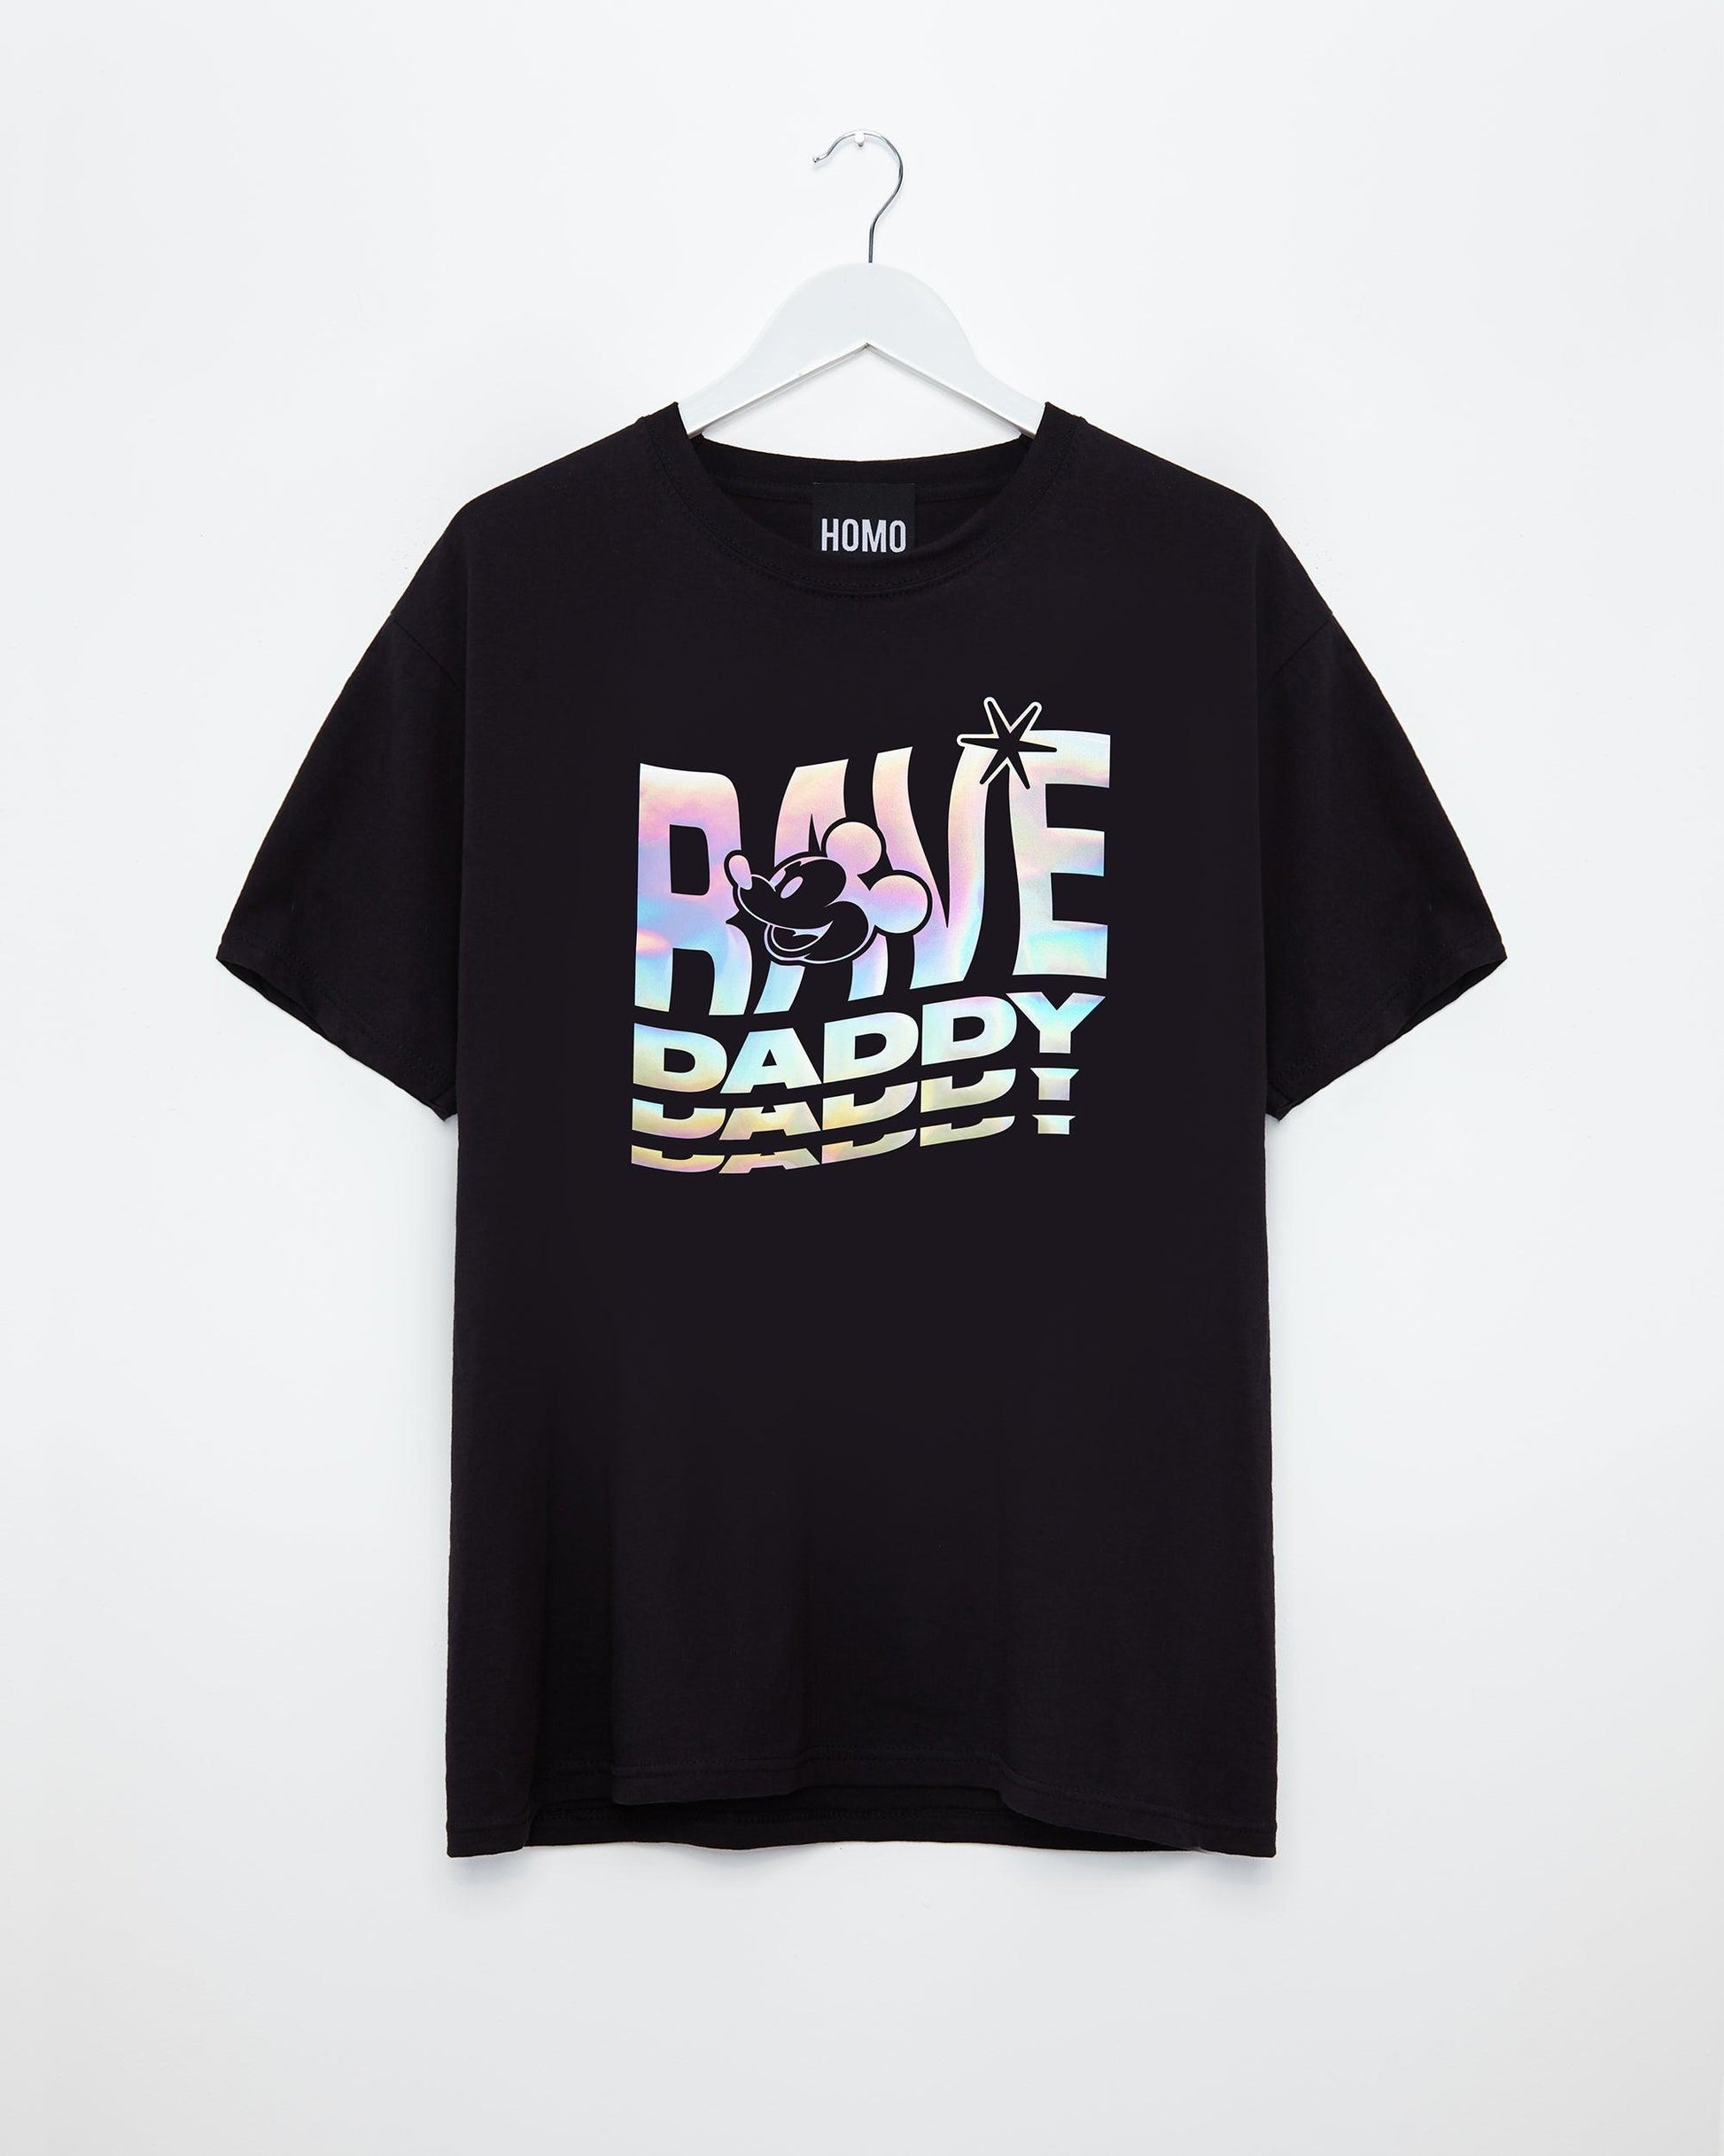 Rave Daddy, hologram - mens tshirt - HOMOLONDON